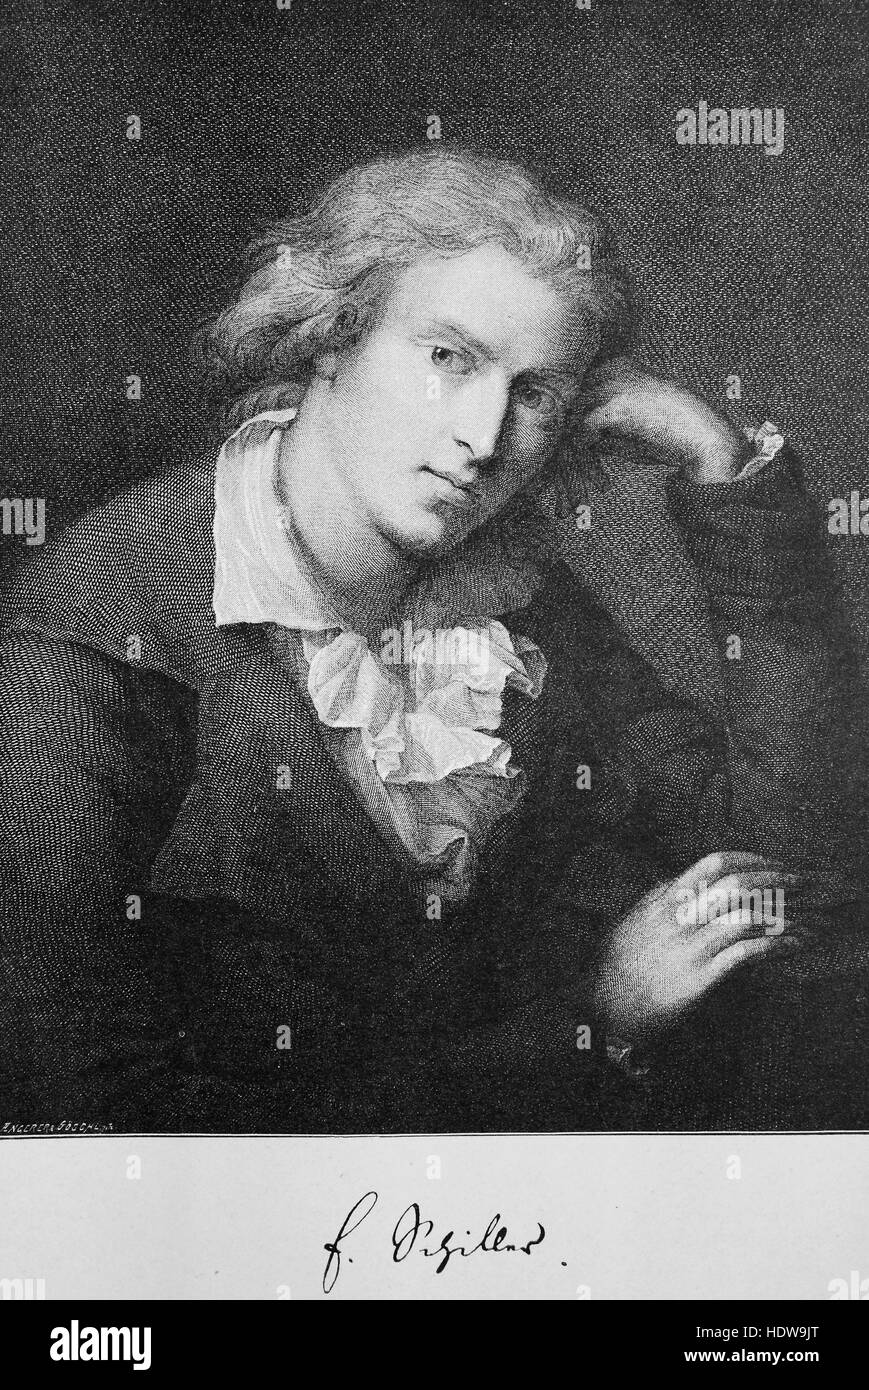 Johann Christoph Friedrich von Schiller, das Bild war er 28 Jahre alt, 1759-1805, deutscher Dichter, Philosoph, Arzt, Historiker und Dramatiker, Holzschnitt aus dem Jahr 1880 Stockfoto